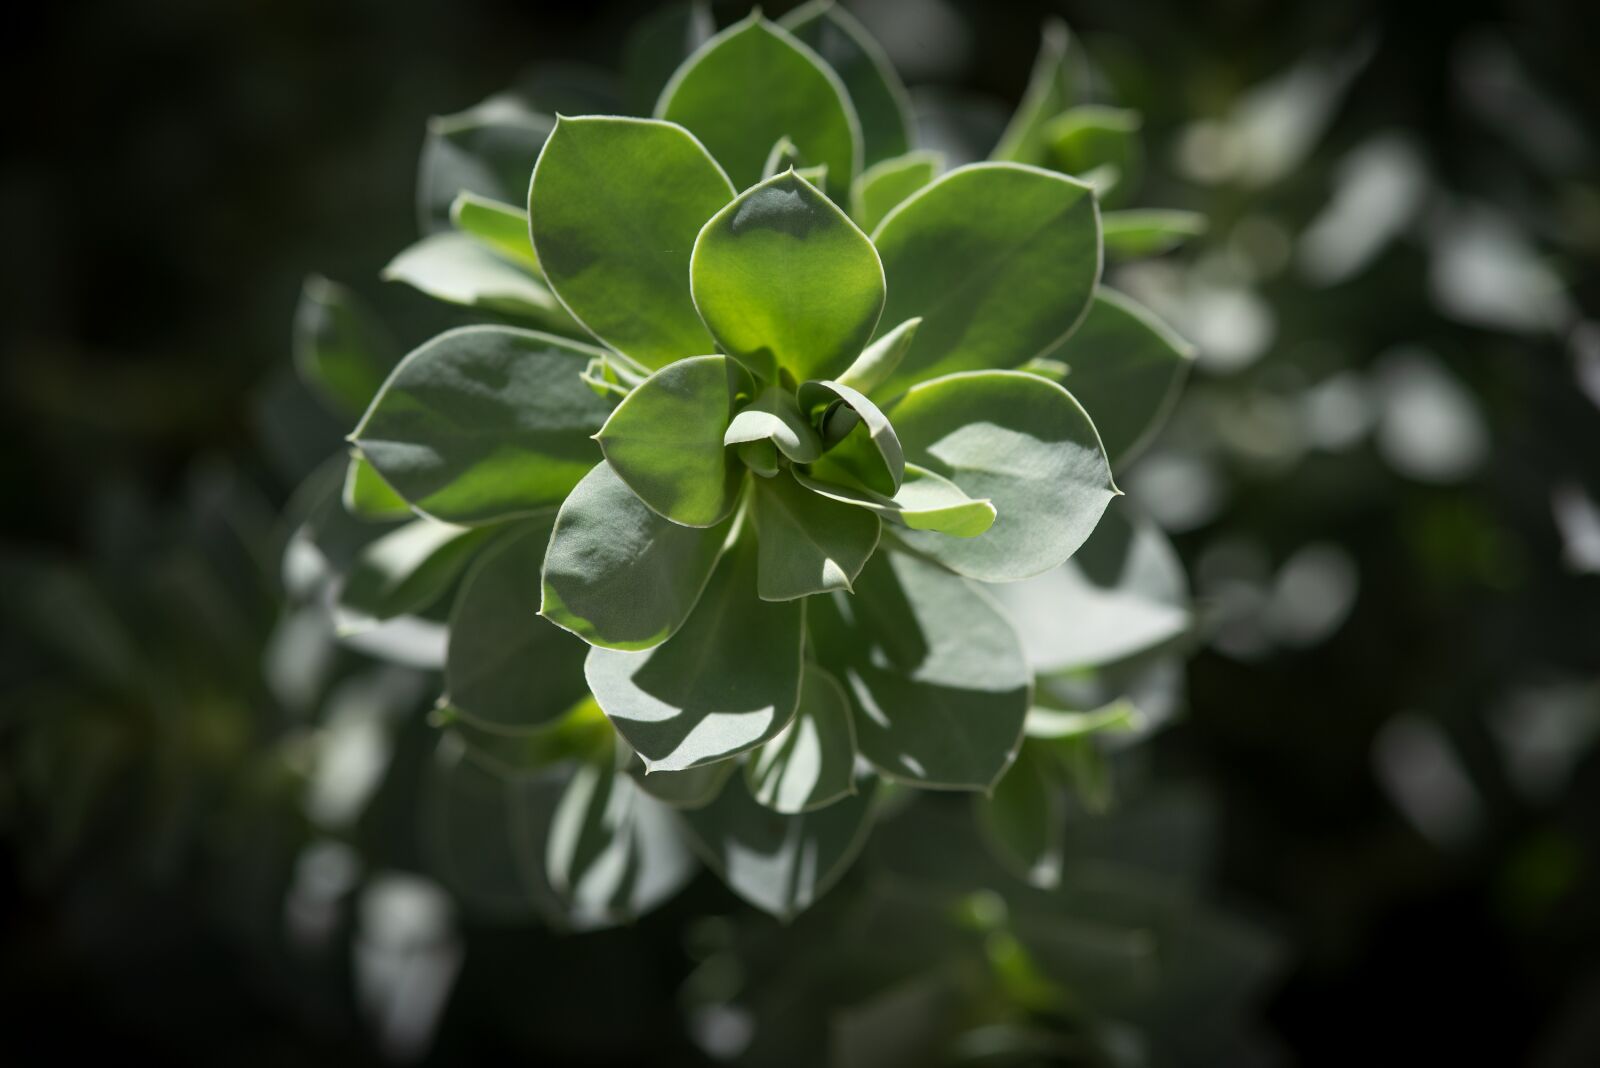 Nikon D750 sample photo. Plant, garden, green photography